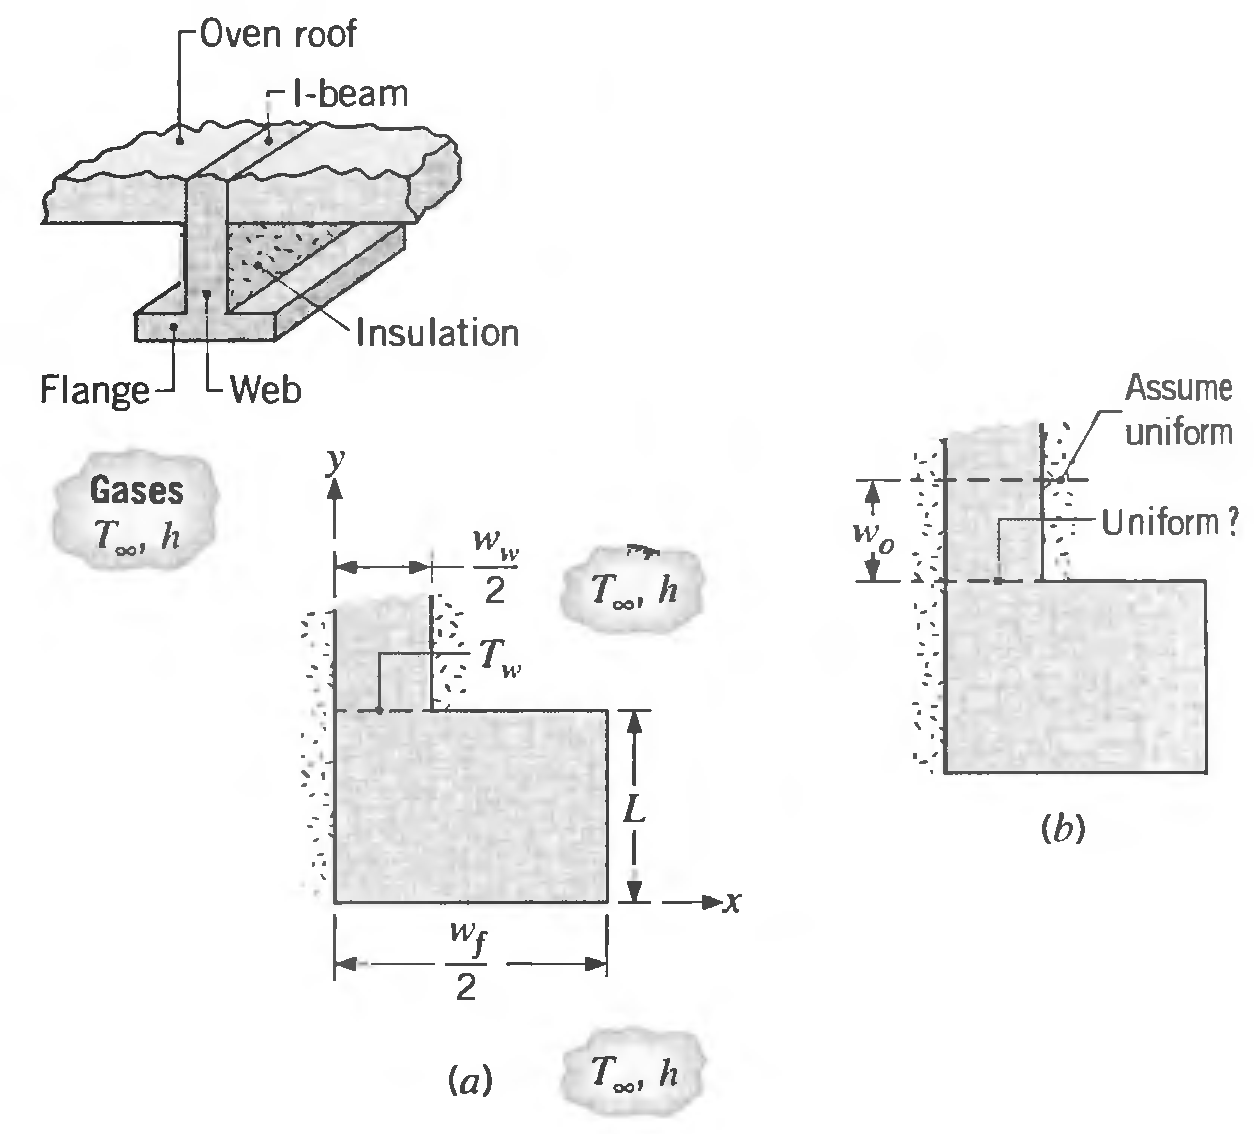 -Oven roof -l-beam Insulation Flange Web Assume uniform Gases -Uniform? W. 2 и (b) Wf 2 т,h (a) 